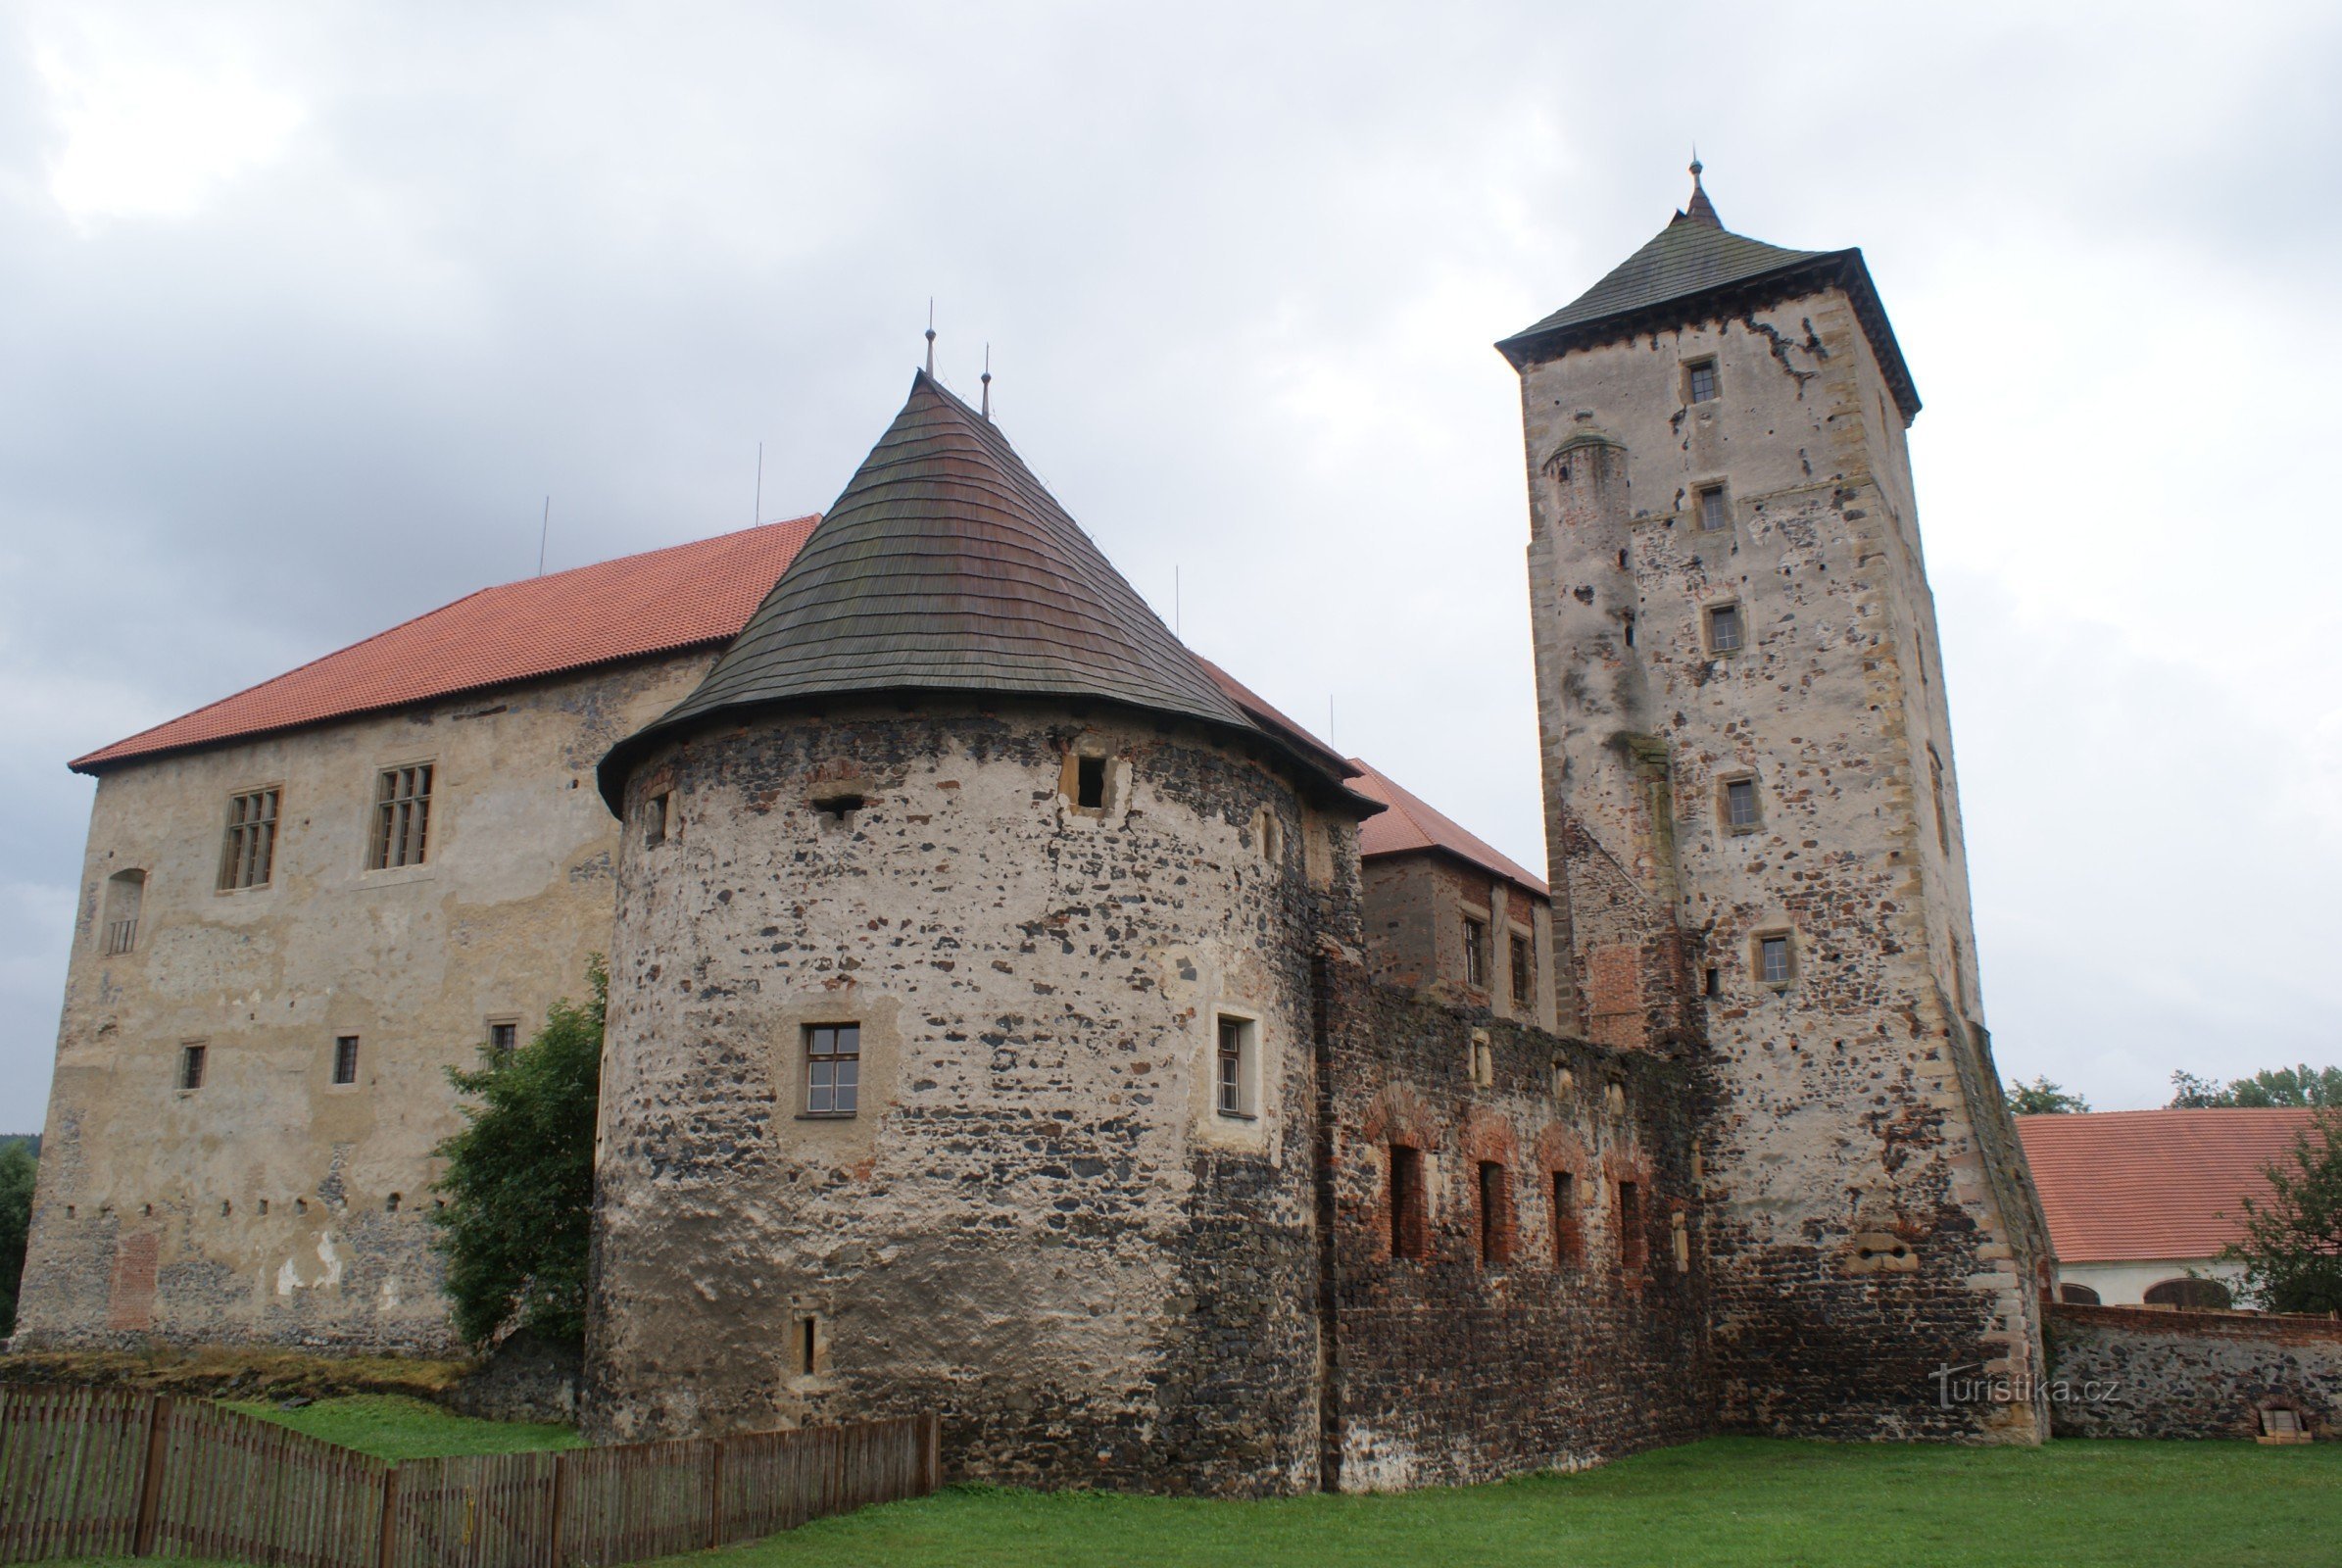 Švihov - ett vattenslott och en pärla av befästningsarkitektur (slottets historia och utseende)